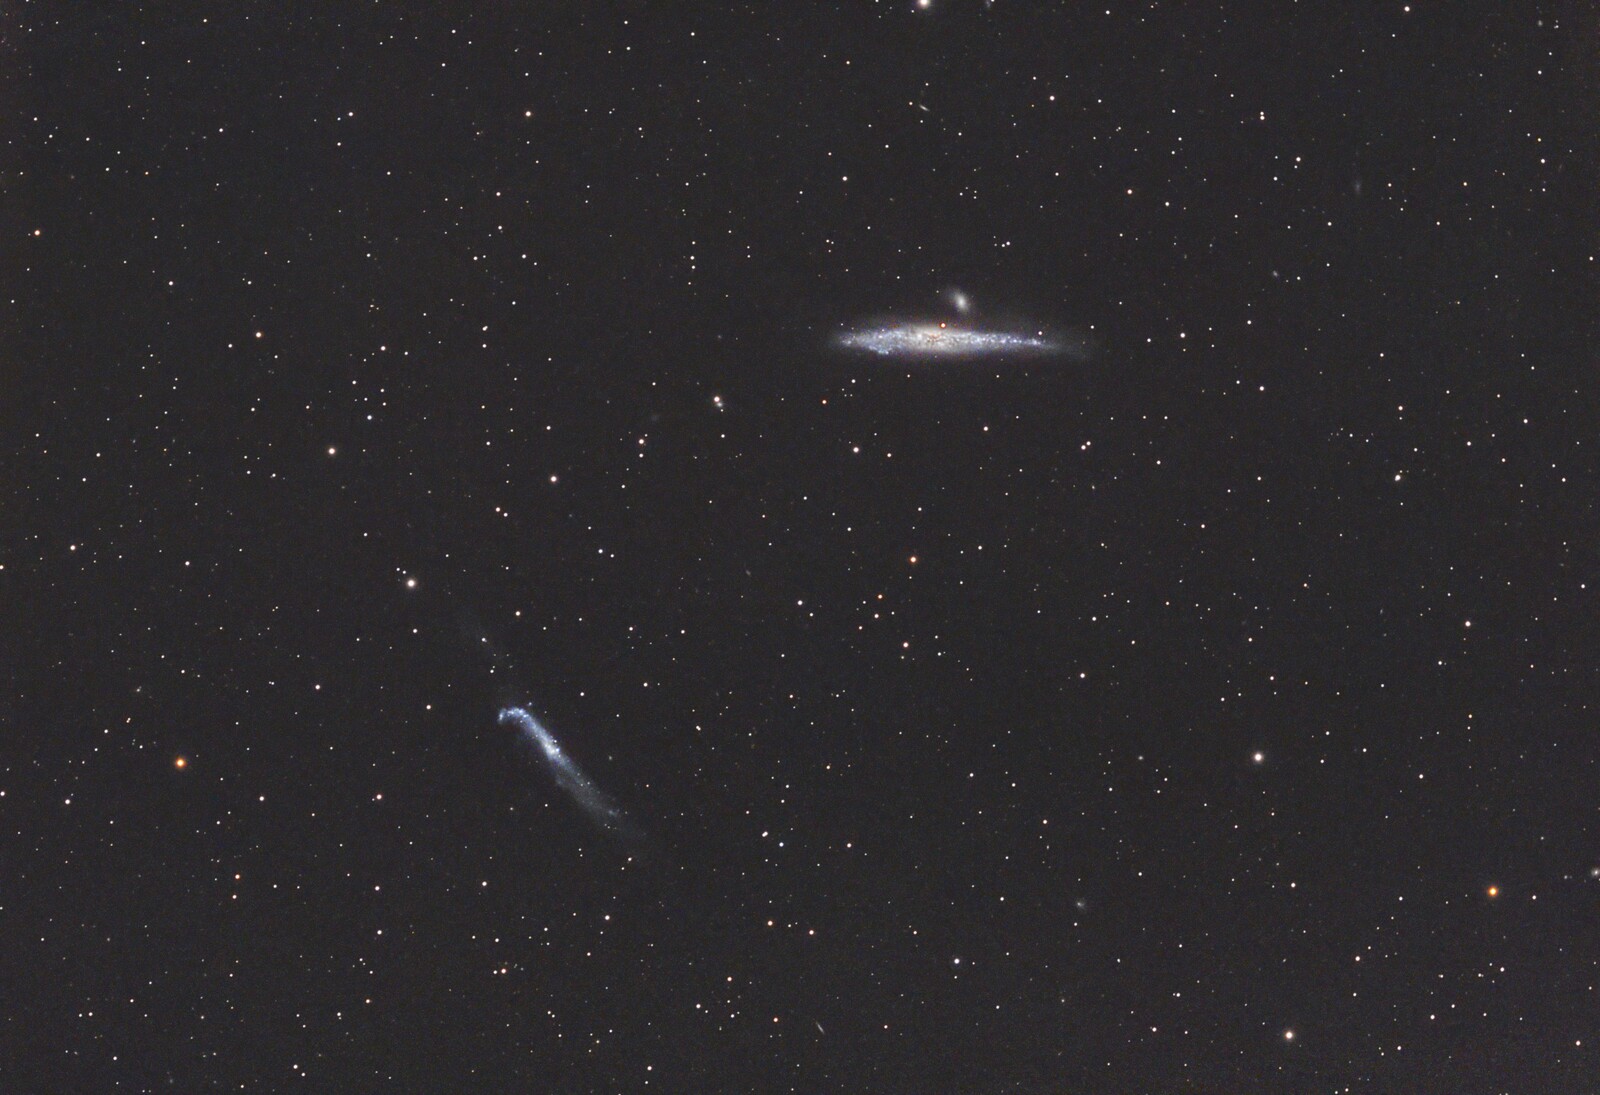 NGC4656 Whale HockeyStick--first light A-P field flattener